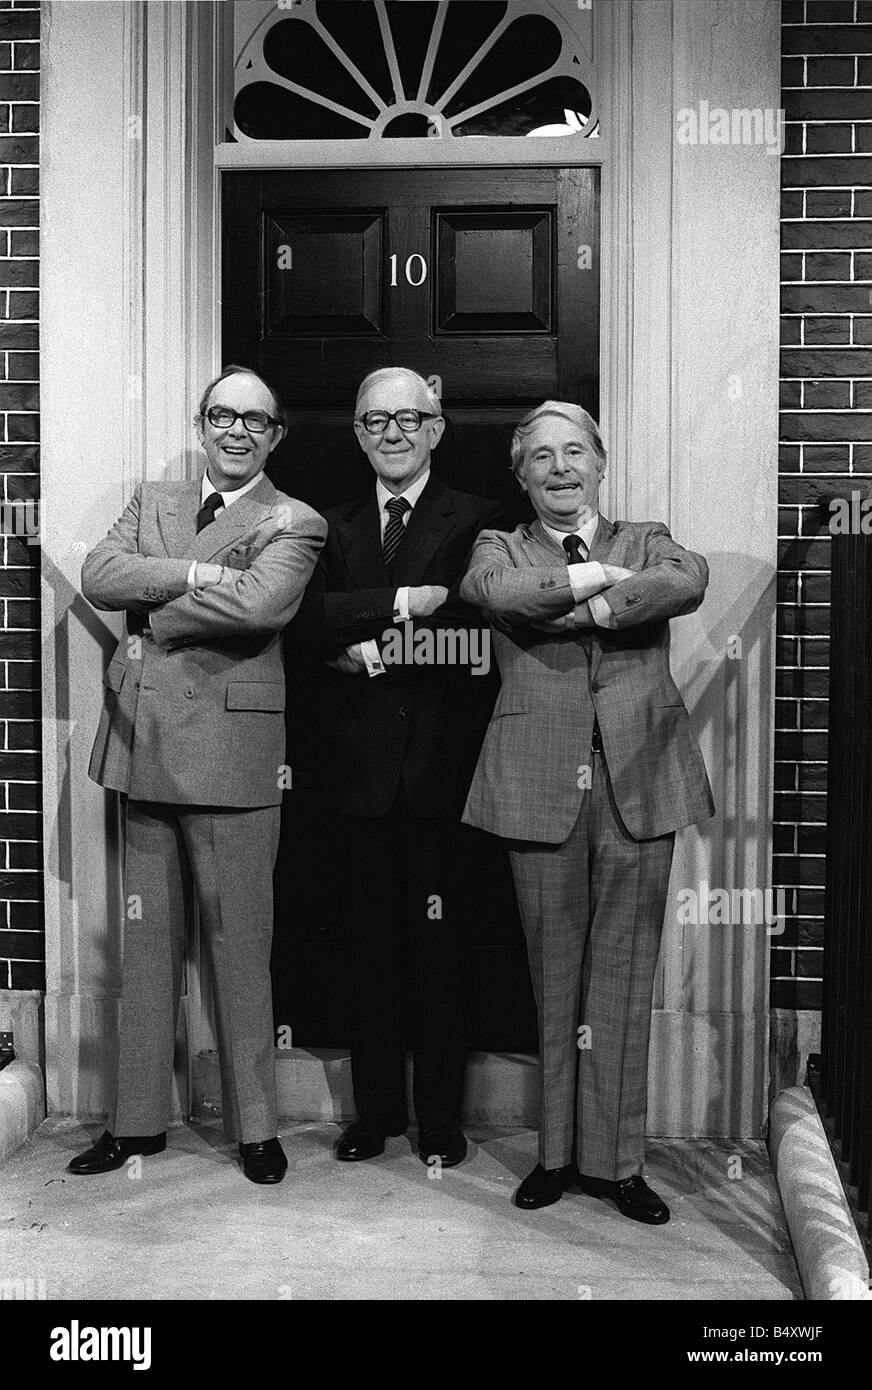 Sir Alec Guinness mit Eric Morecambe und Ernie Wise erscheinen in der Morecambe und Wise Christmas Show Stellen außerhalb Nummer 10 Downing Street in Teddington Studios Stockfoto